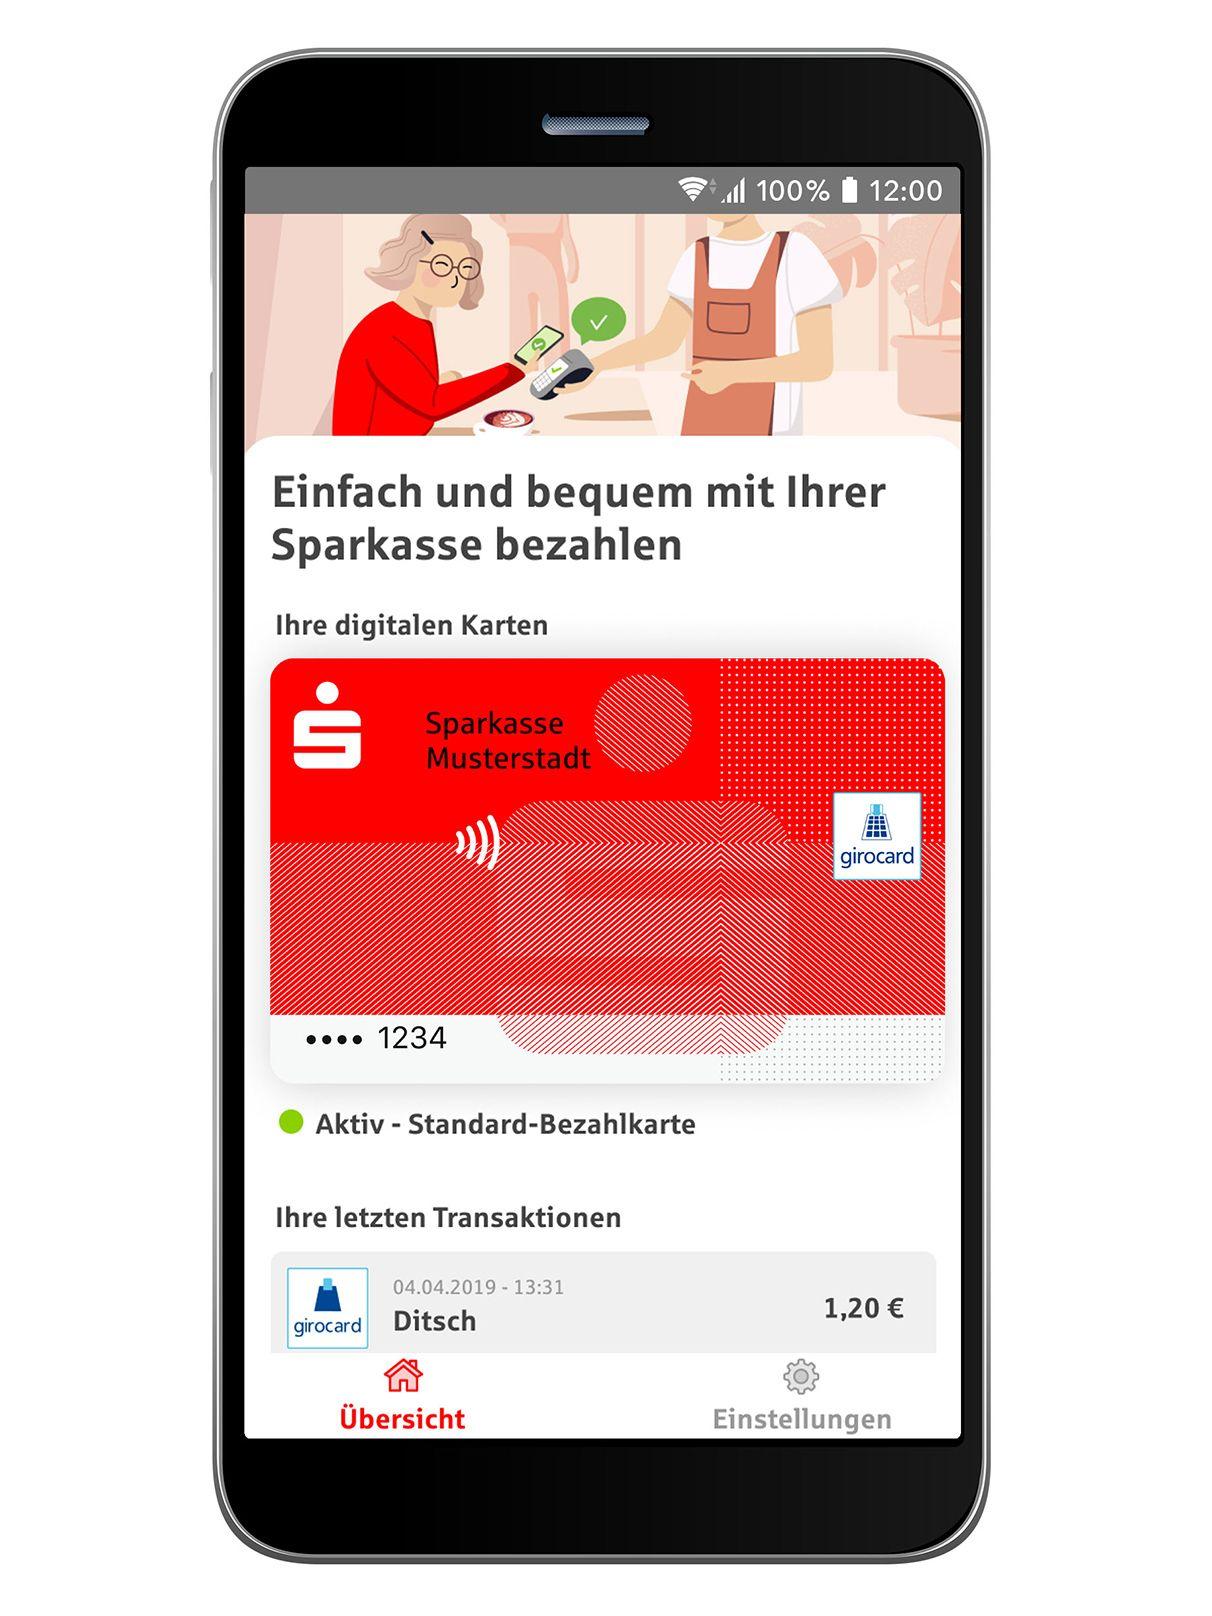 Ein Smartphone-Bildschirm auf weißem Grund. Eine Transaktion mit der digitalen Karte der Sparkasse über den Betrag von 1,20 Euro wird angezeigt.